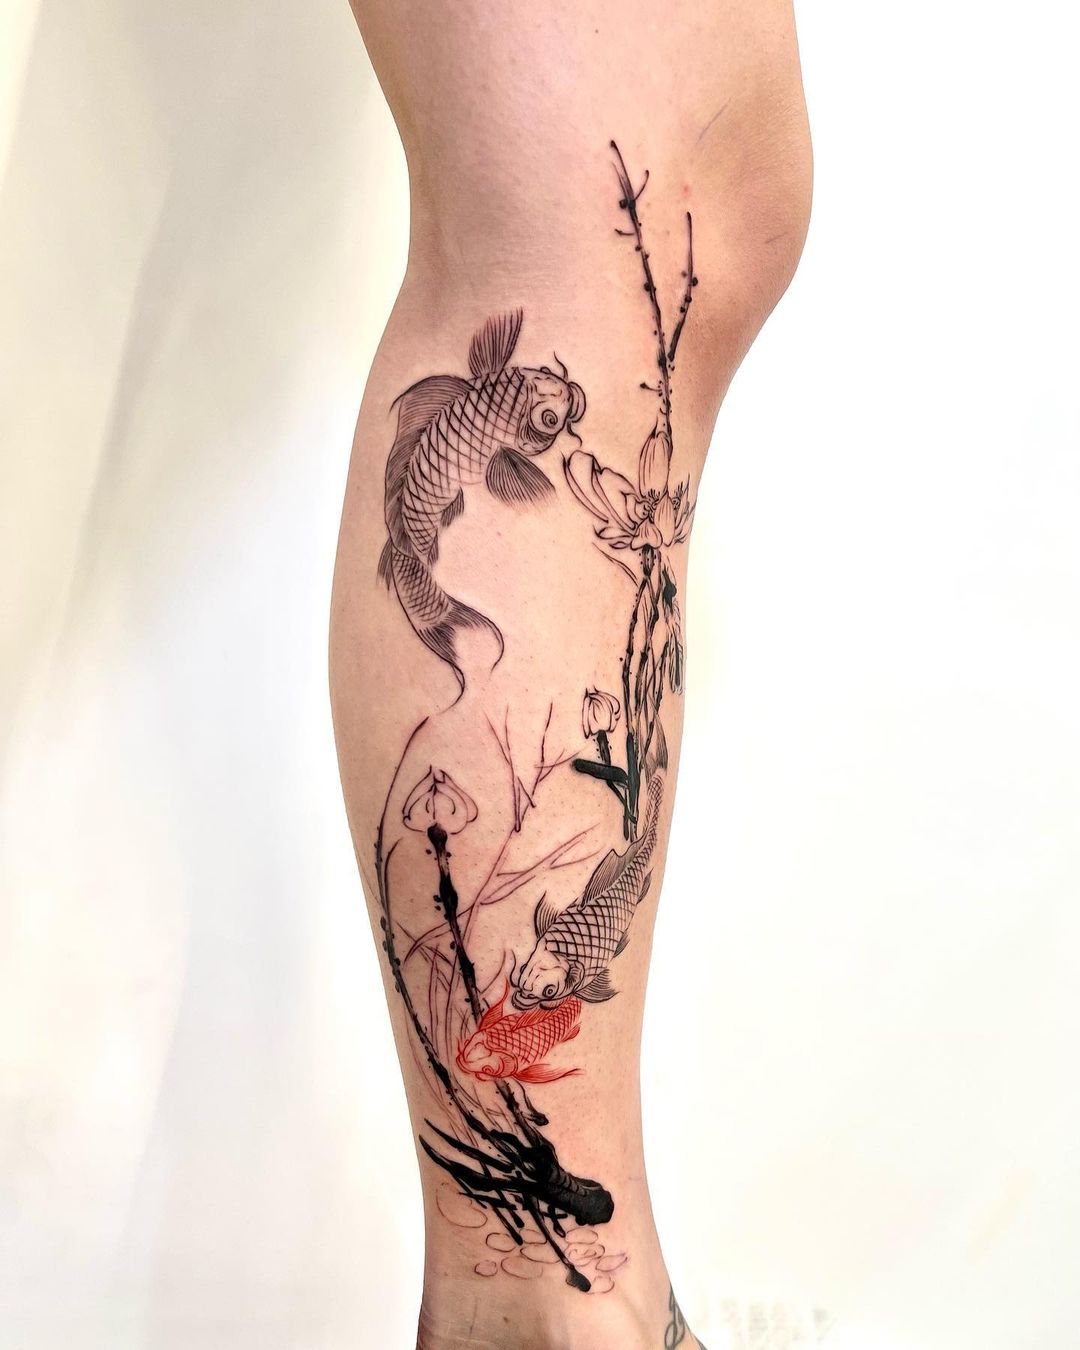 Chronic Ink Tattoo Shops - Samurai tattoo in progress, done by David  #workproud #wearproud #378YongeSt | Facebook